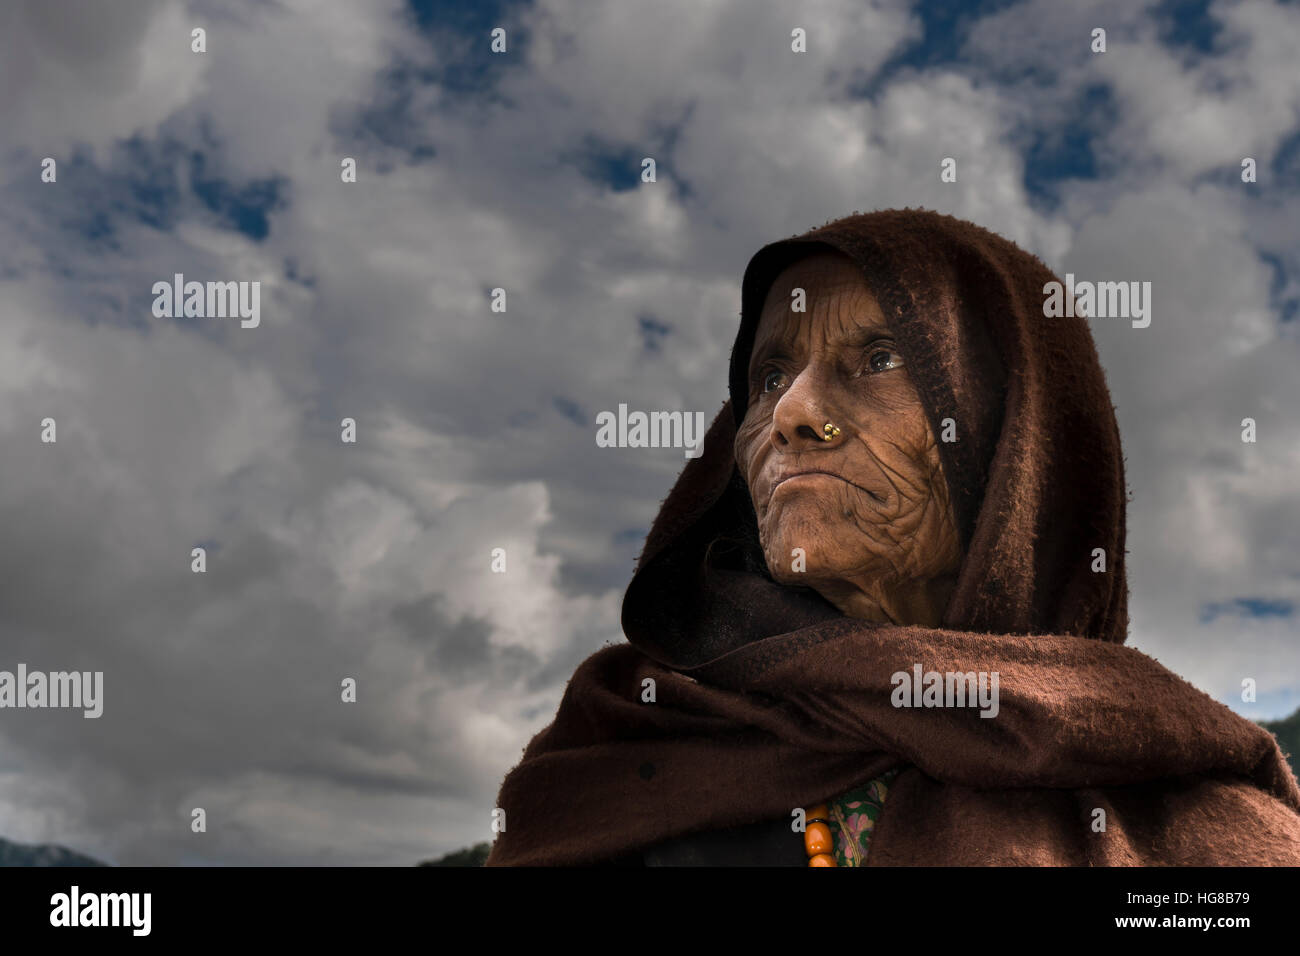 Retrato de una mujer local arrugado, viejo, llevaba una bufanda marrón, Ghandruk, distrito de Kaski, Nepal Foto de stock